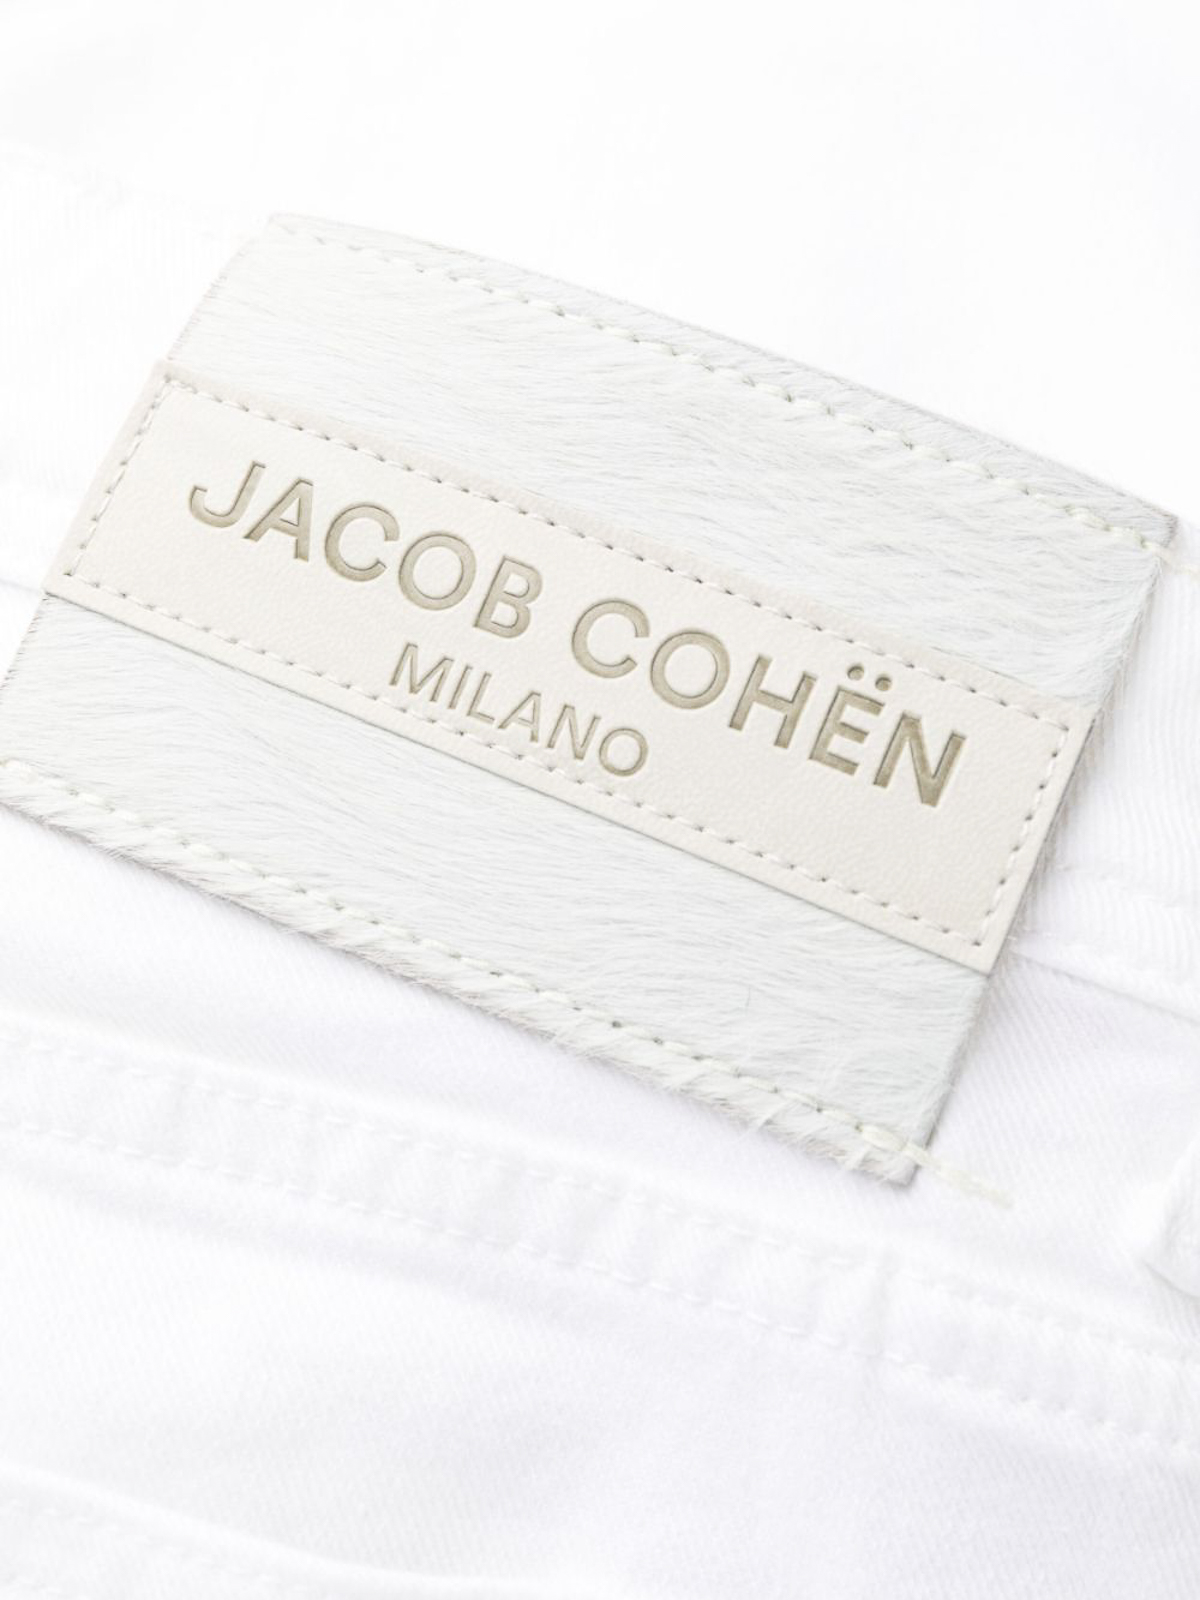 Shop Jacob Cohen `nick Slim` 5-pocket Super Slim Fit Jeans In White